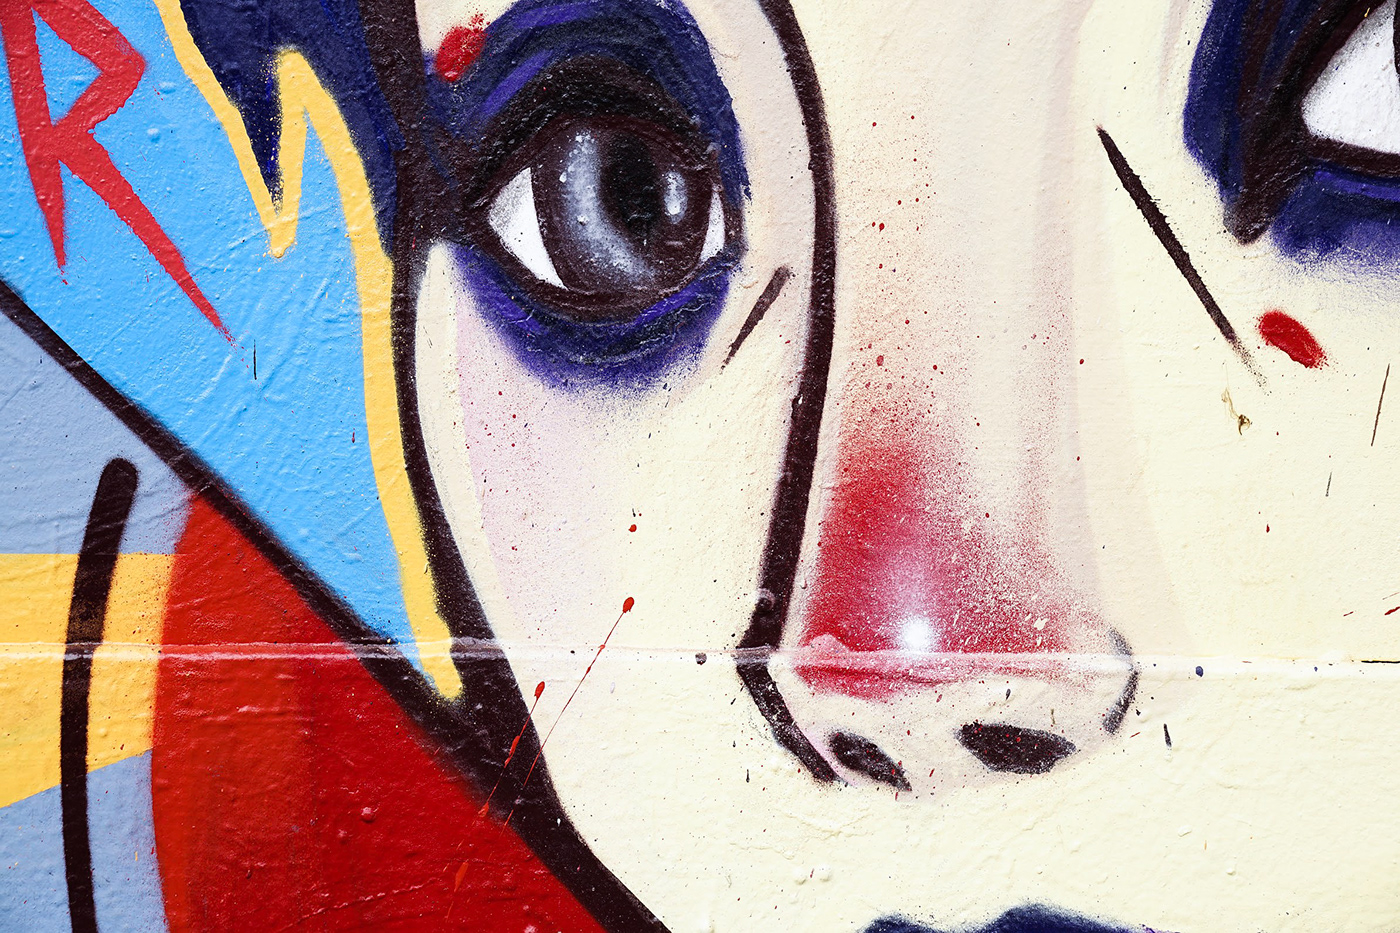 Graffiti Love death robots love death robots spray paint Netflix pedmons Street Art 